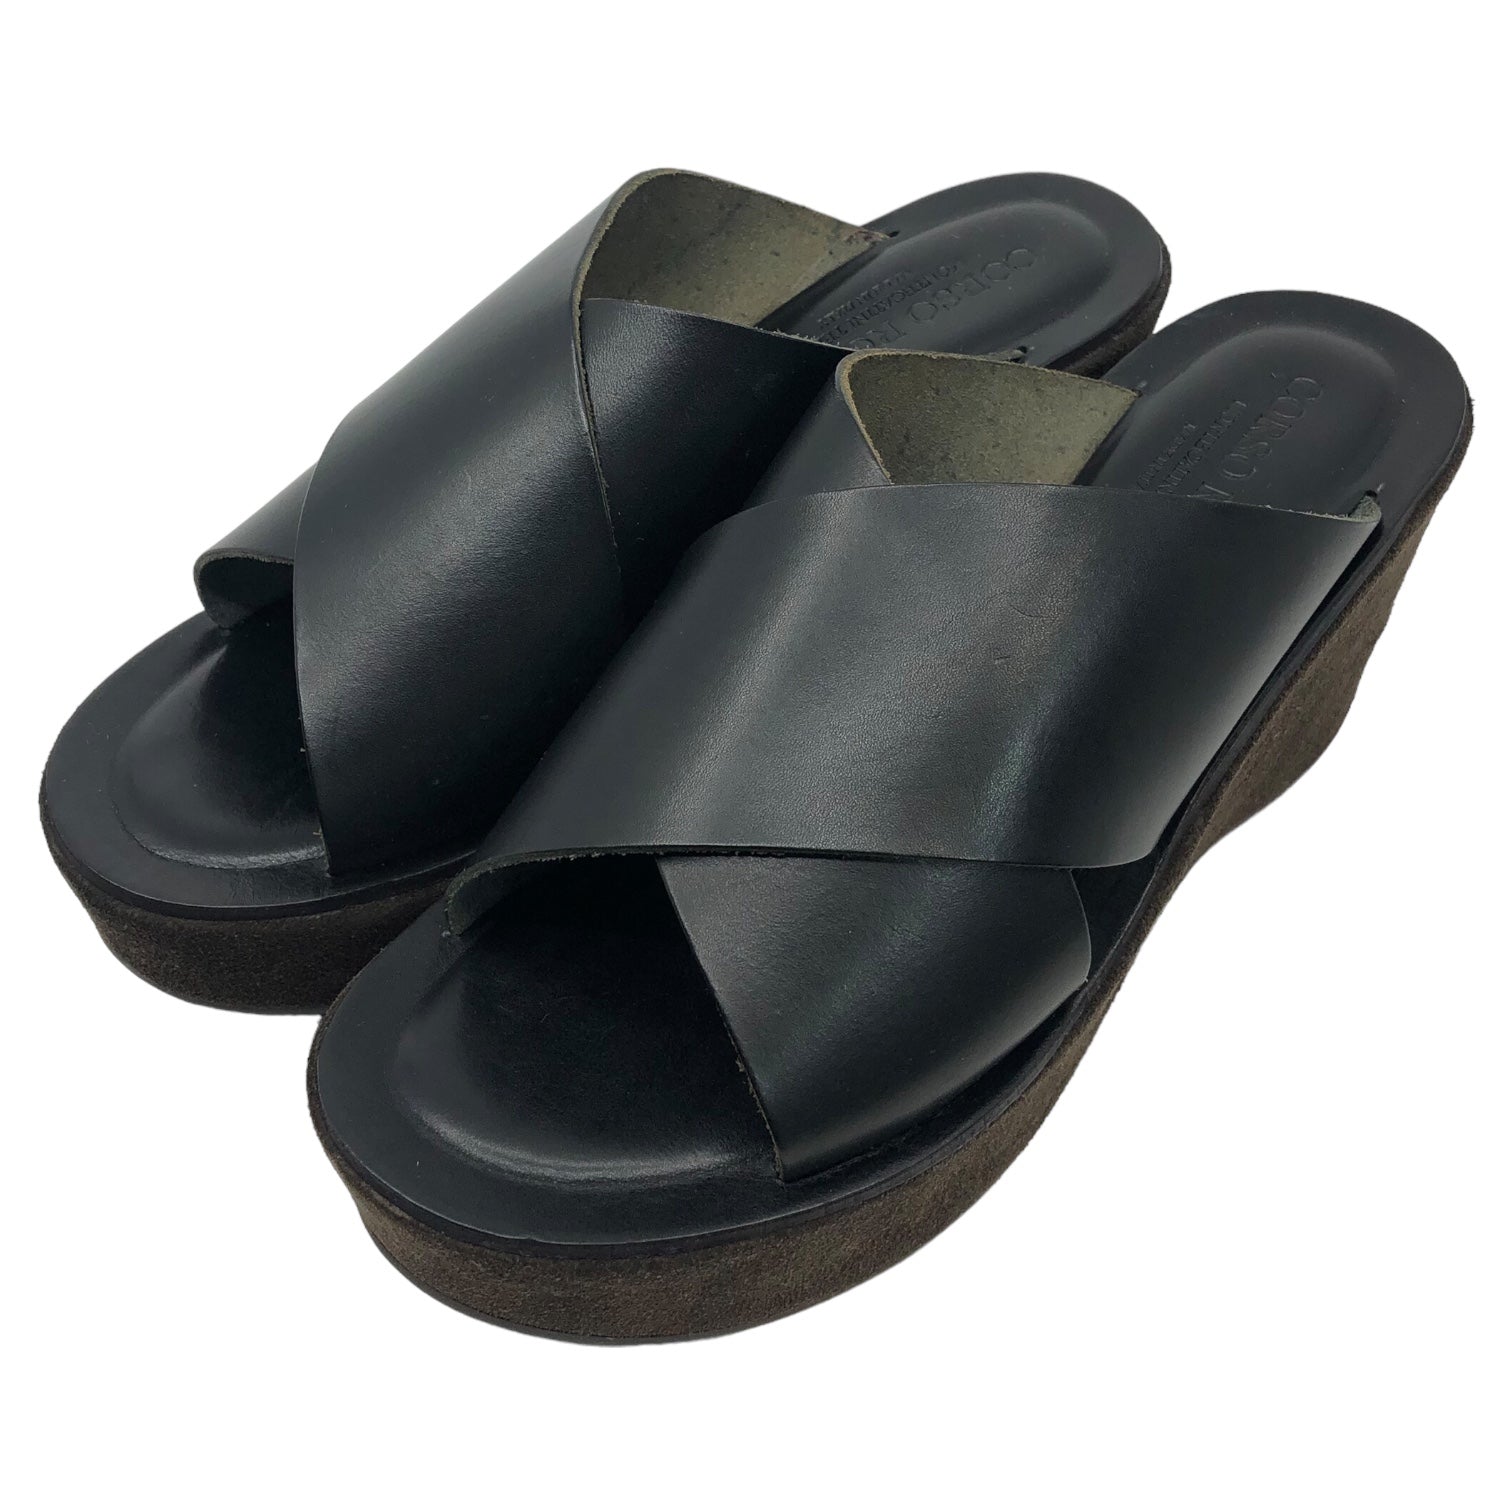 CORSO ROMA,9(コルソローマ) platform cross sandals プラットフォーム クロス サンダル 8117 38(24~24.5cm程度) ブラック IENA等取扱 参考定価17,600円(税込)